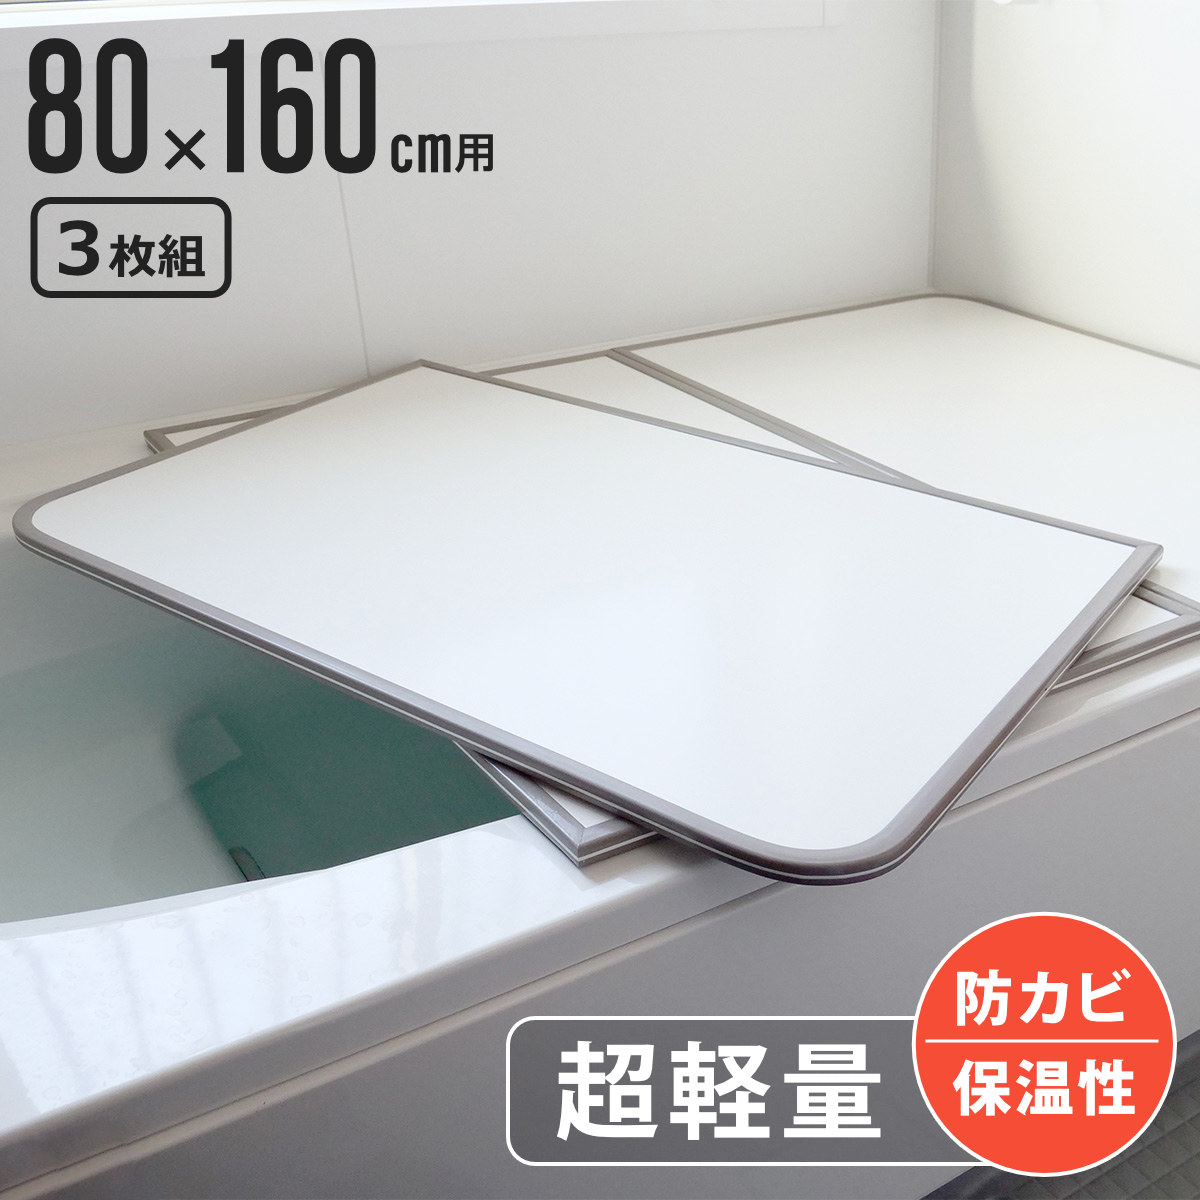  風呂ふた 組み合わせ 軽量 カビの生えにくい風呂ふた W-16 80×160cm 実寸78×158cm 3枚組